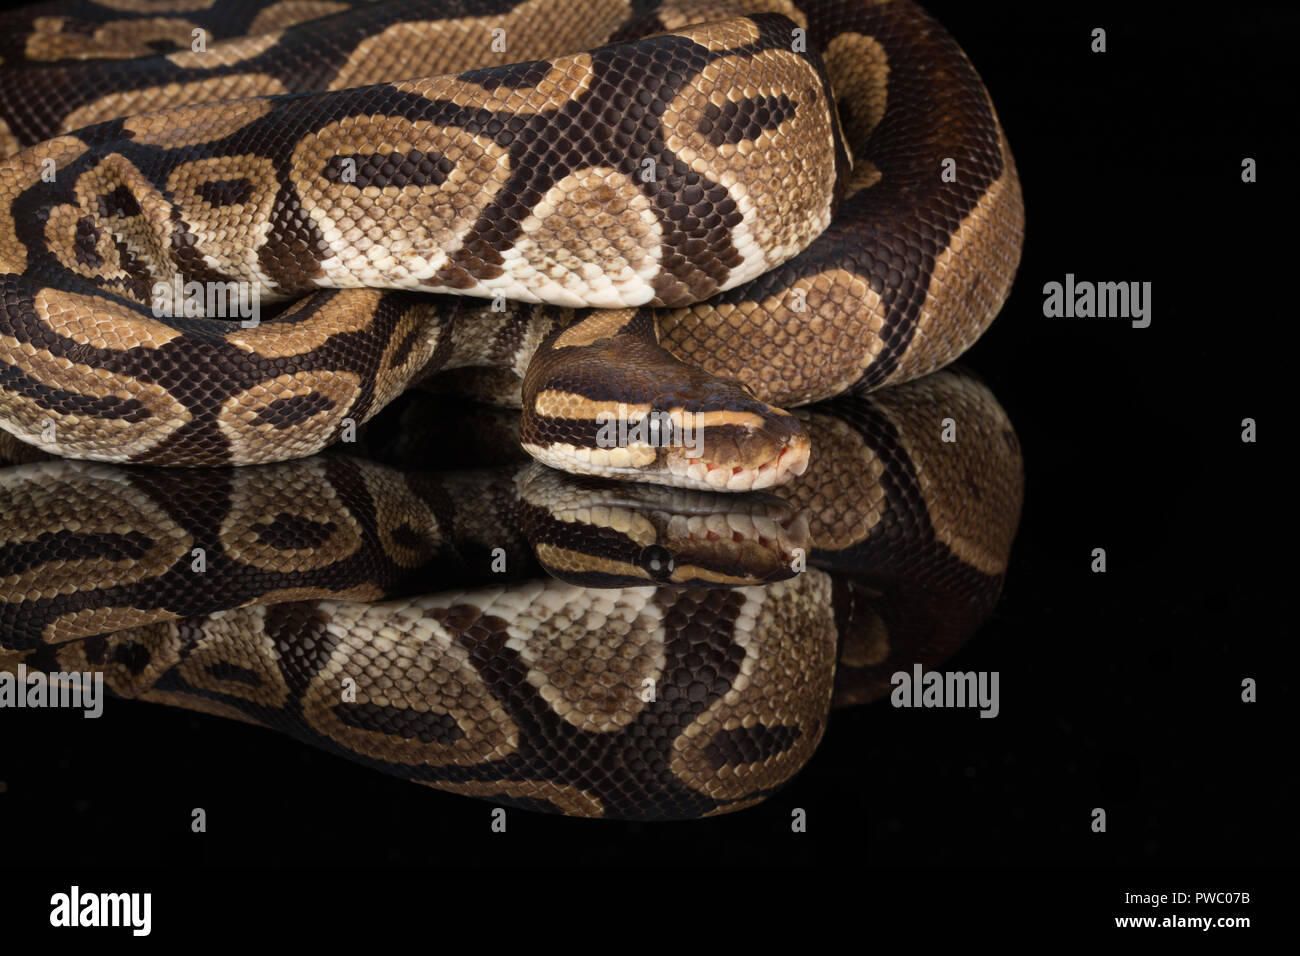 Royal python, auch genannt den Ball python (Python regius), eine afrikanische Reptil Schlange Arten Stockfoto